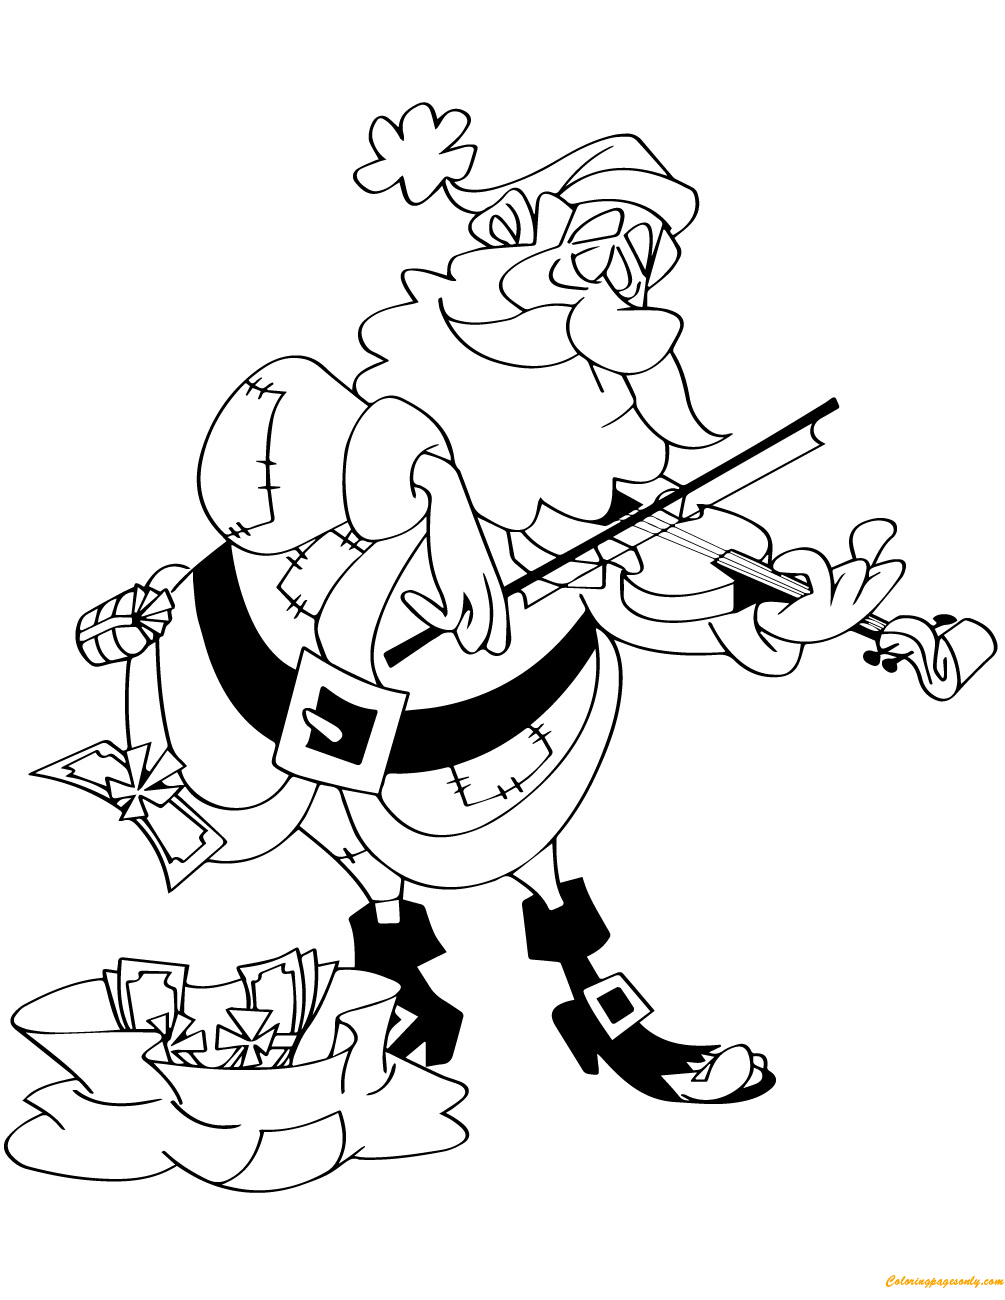 Дед Мороз играет на скрипке от Деда Мороза